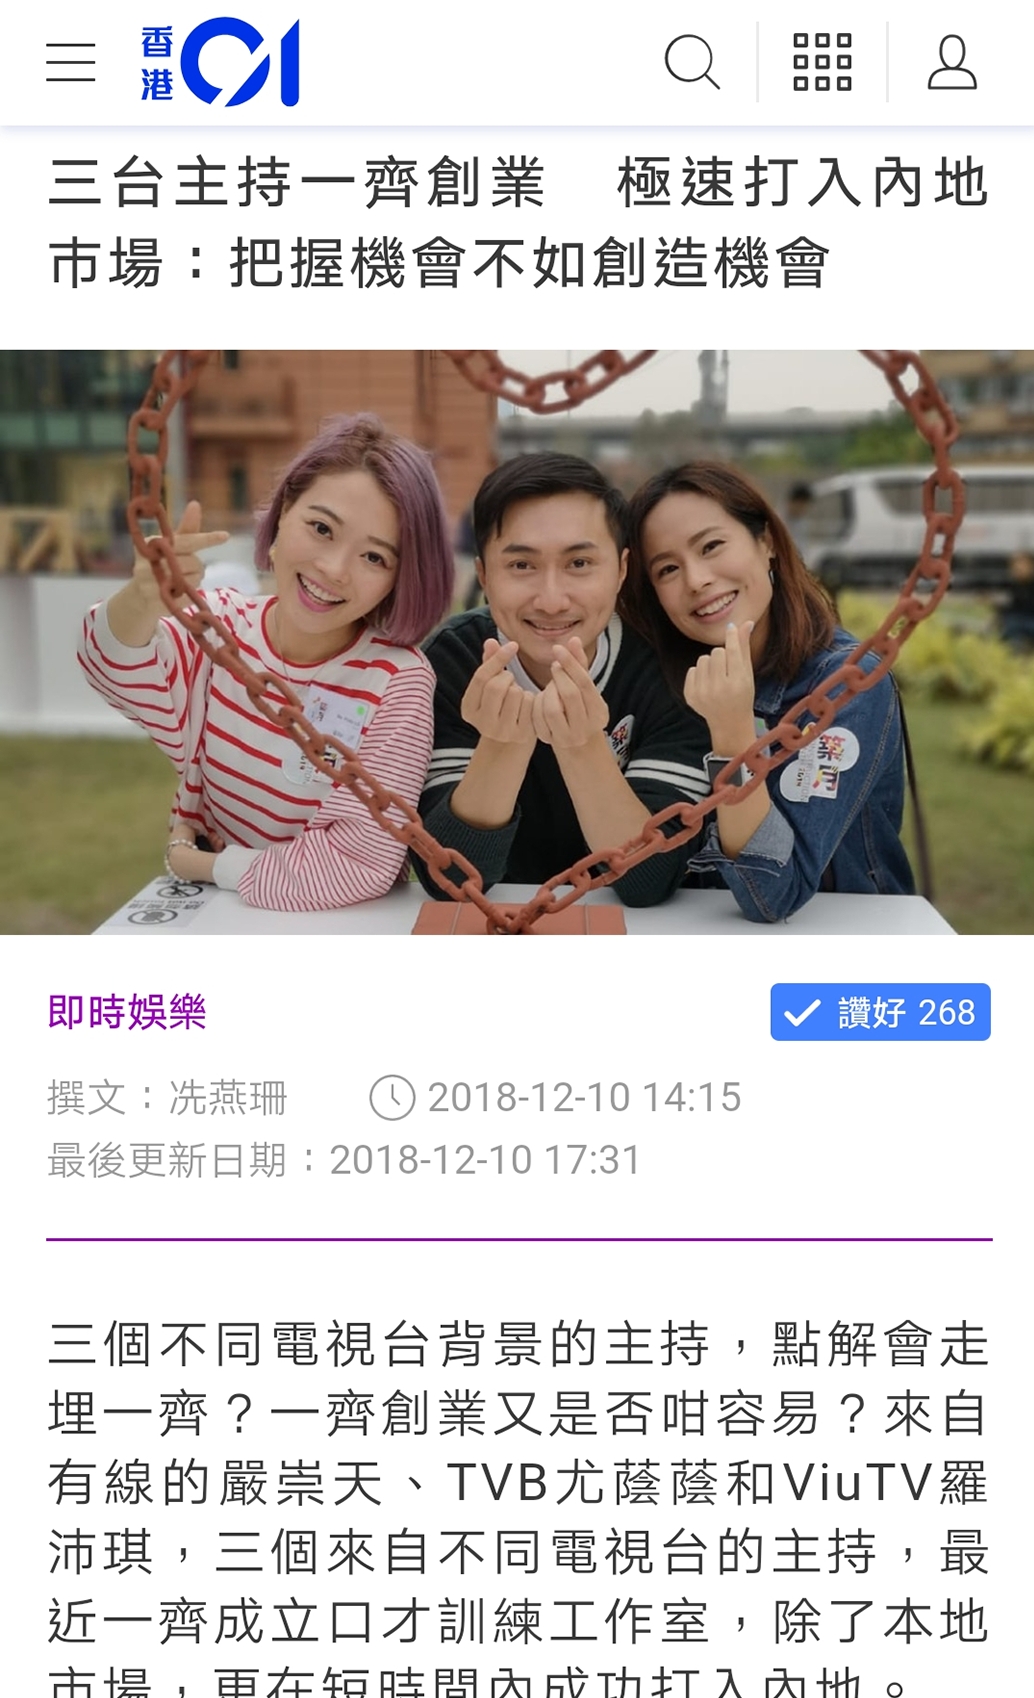 司儀媒體報導Pinky Lo 羅沛琪: Viu TV 主持攜手與TVB 及有線主持一起開司儀培訓工作室